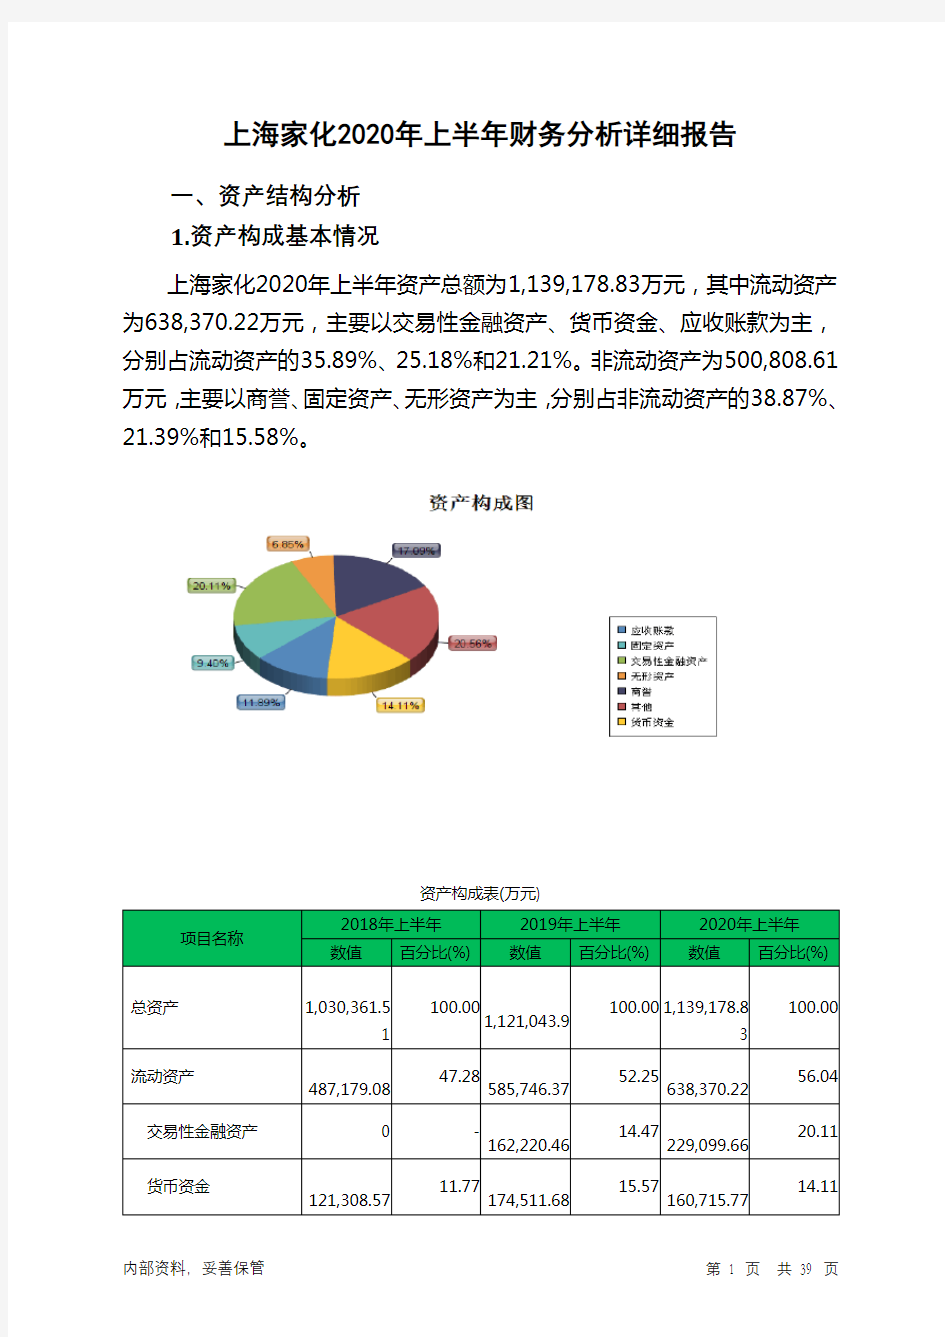 上海家化2020年上半年财务分析详细报告